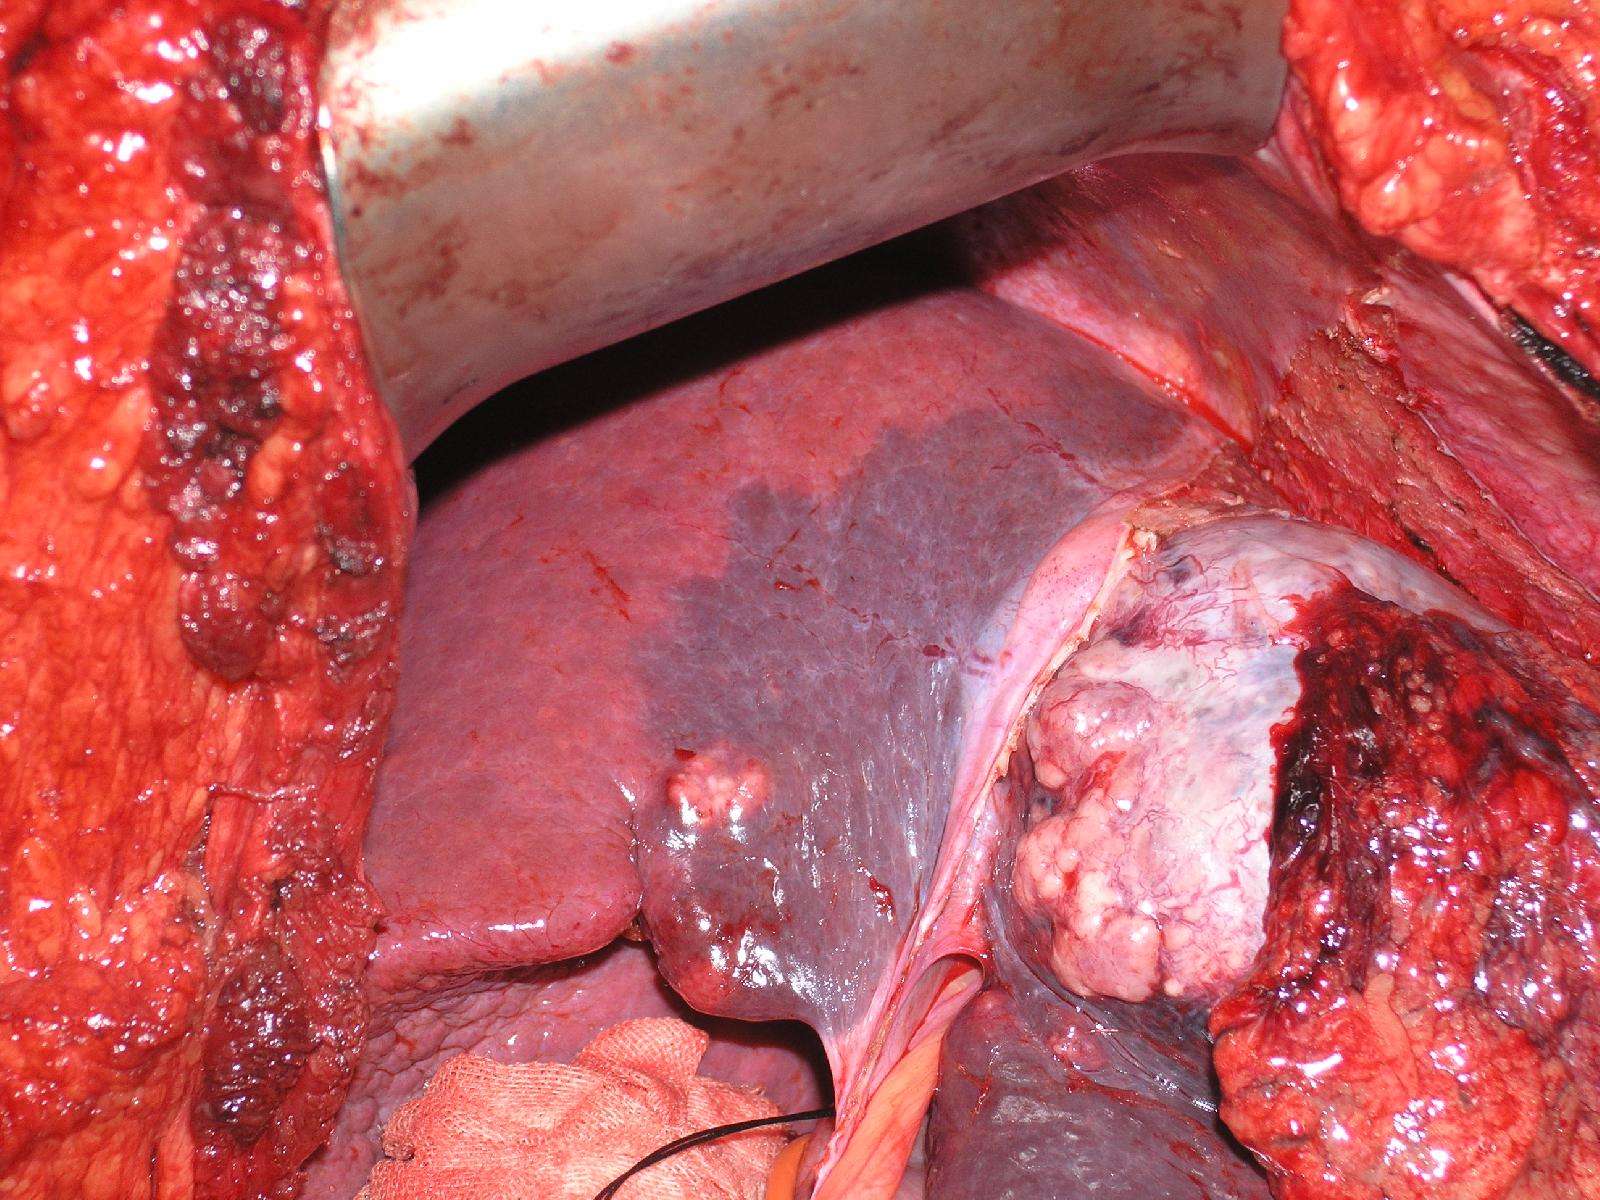 肝癌患者可望获长期生存的肝切除新方法(手术图片)-肝蒂横断法解剖性